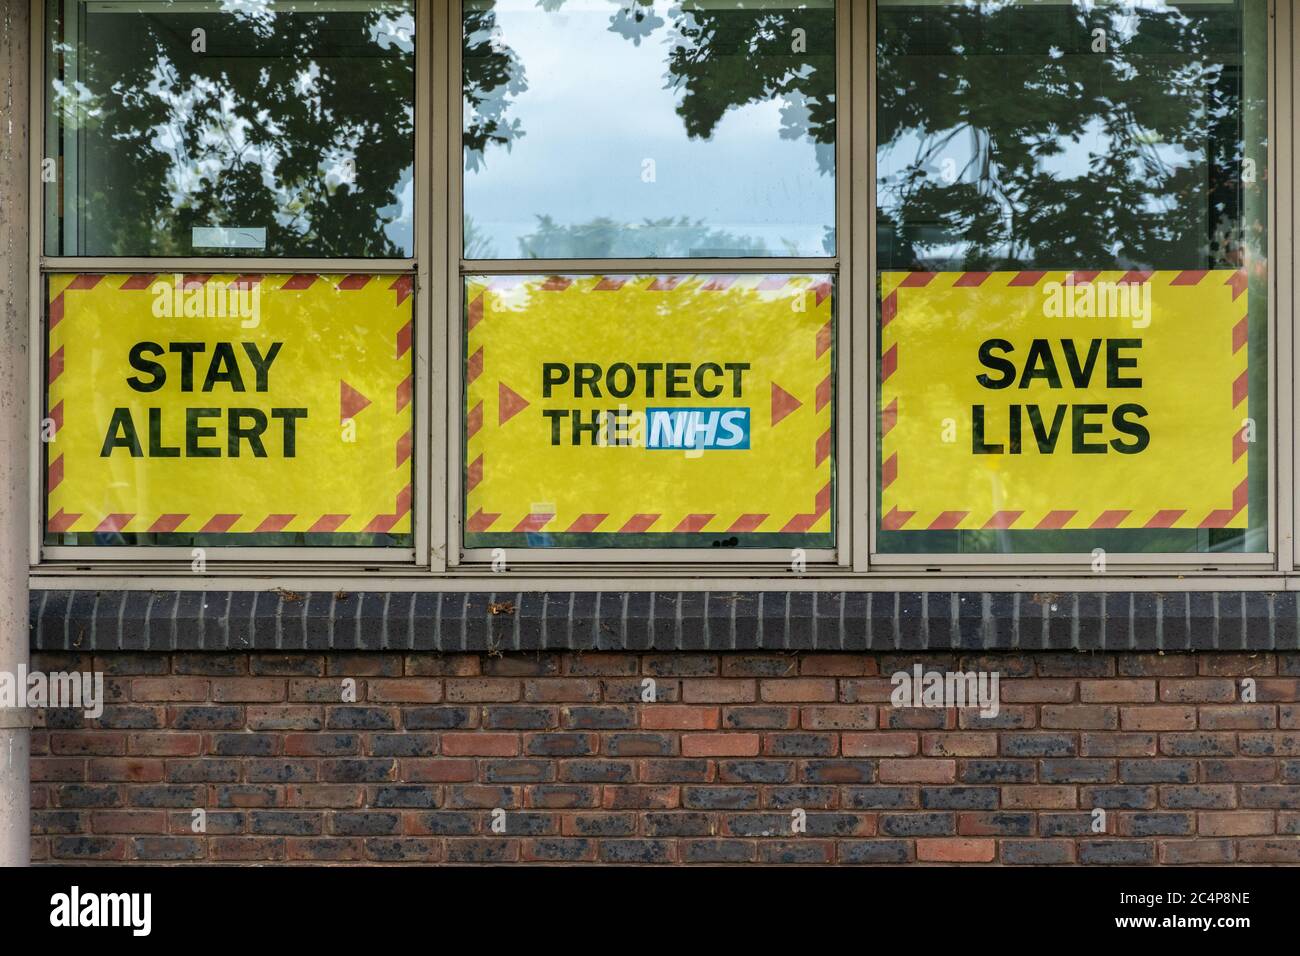 Restez alerte, protégez le NHS, Save Lives, slogan du gouvernement britannique lors de la pandémie du coronavirus Covid-19, le 2020 juin, sur la fenêtre du bureau local du conseil Banque D'Images